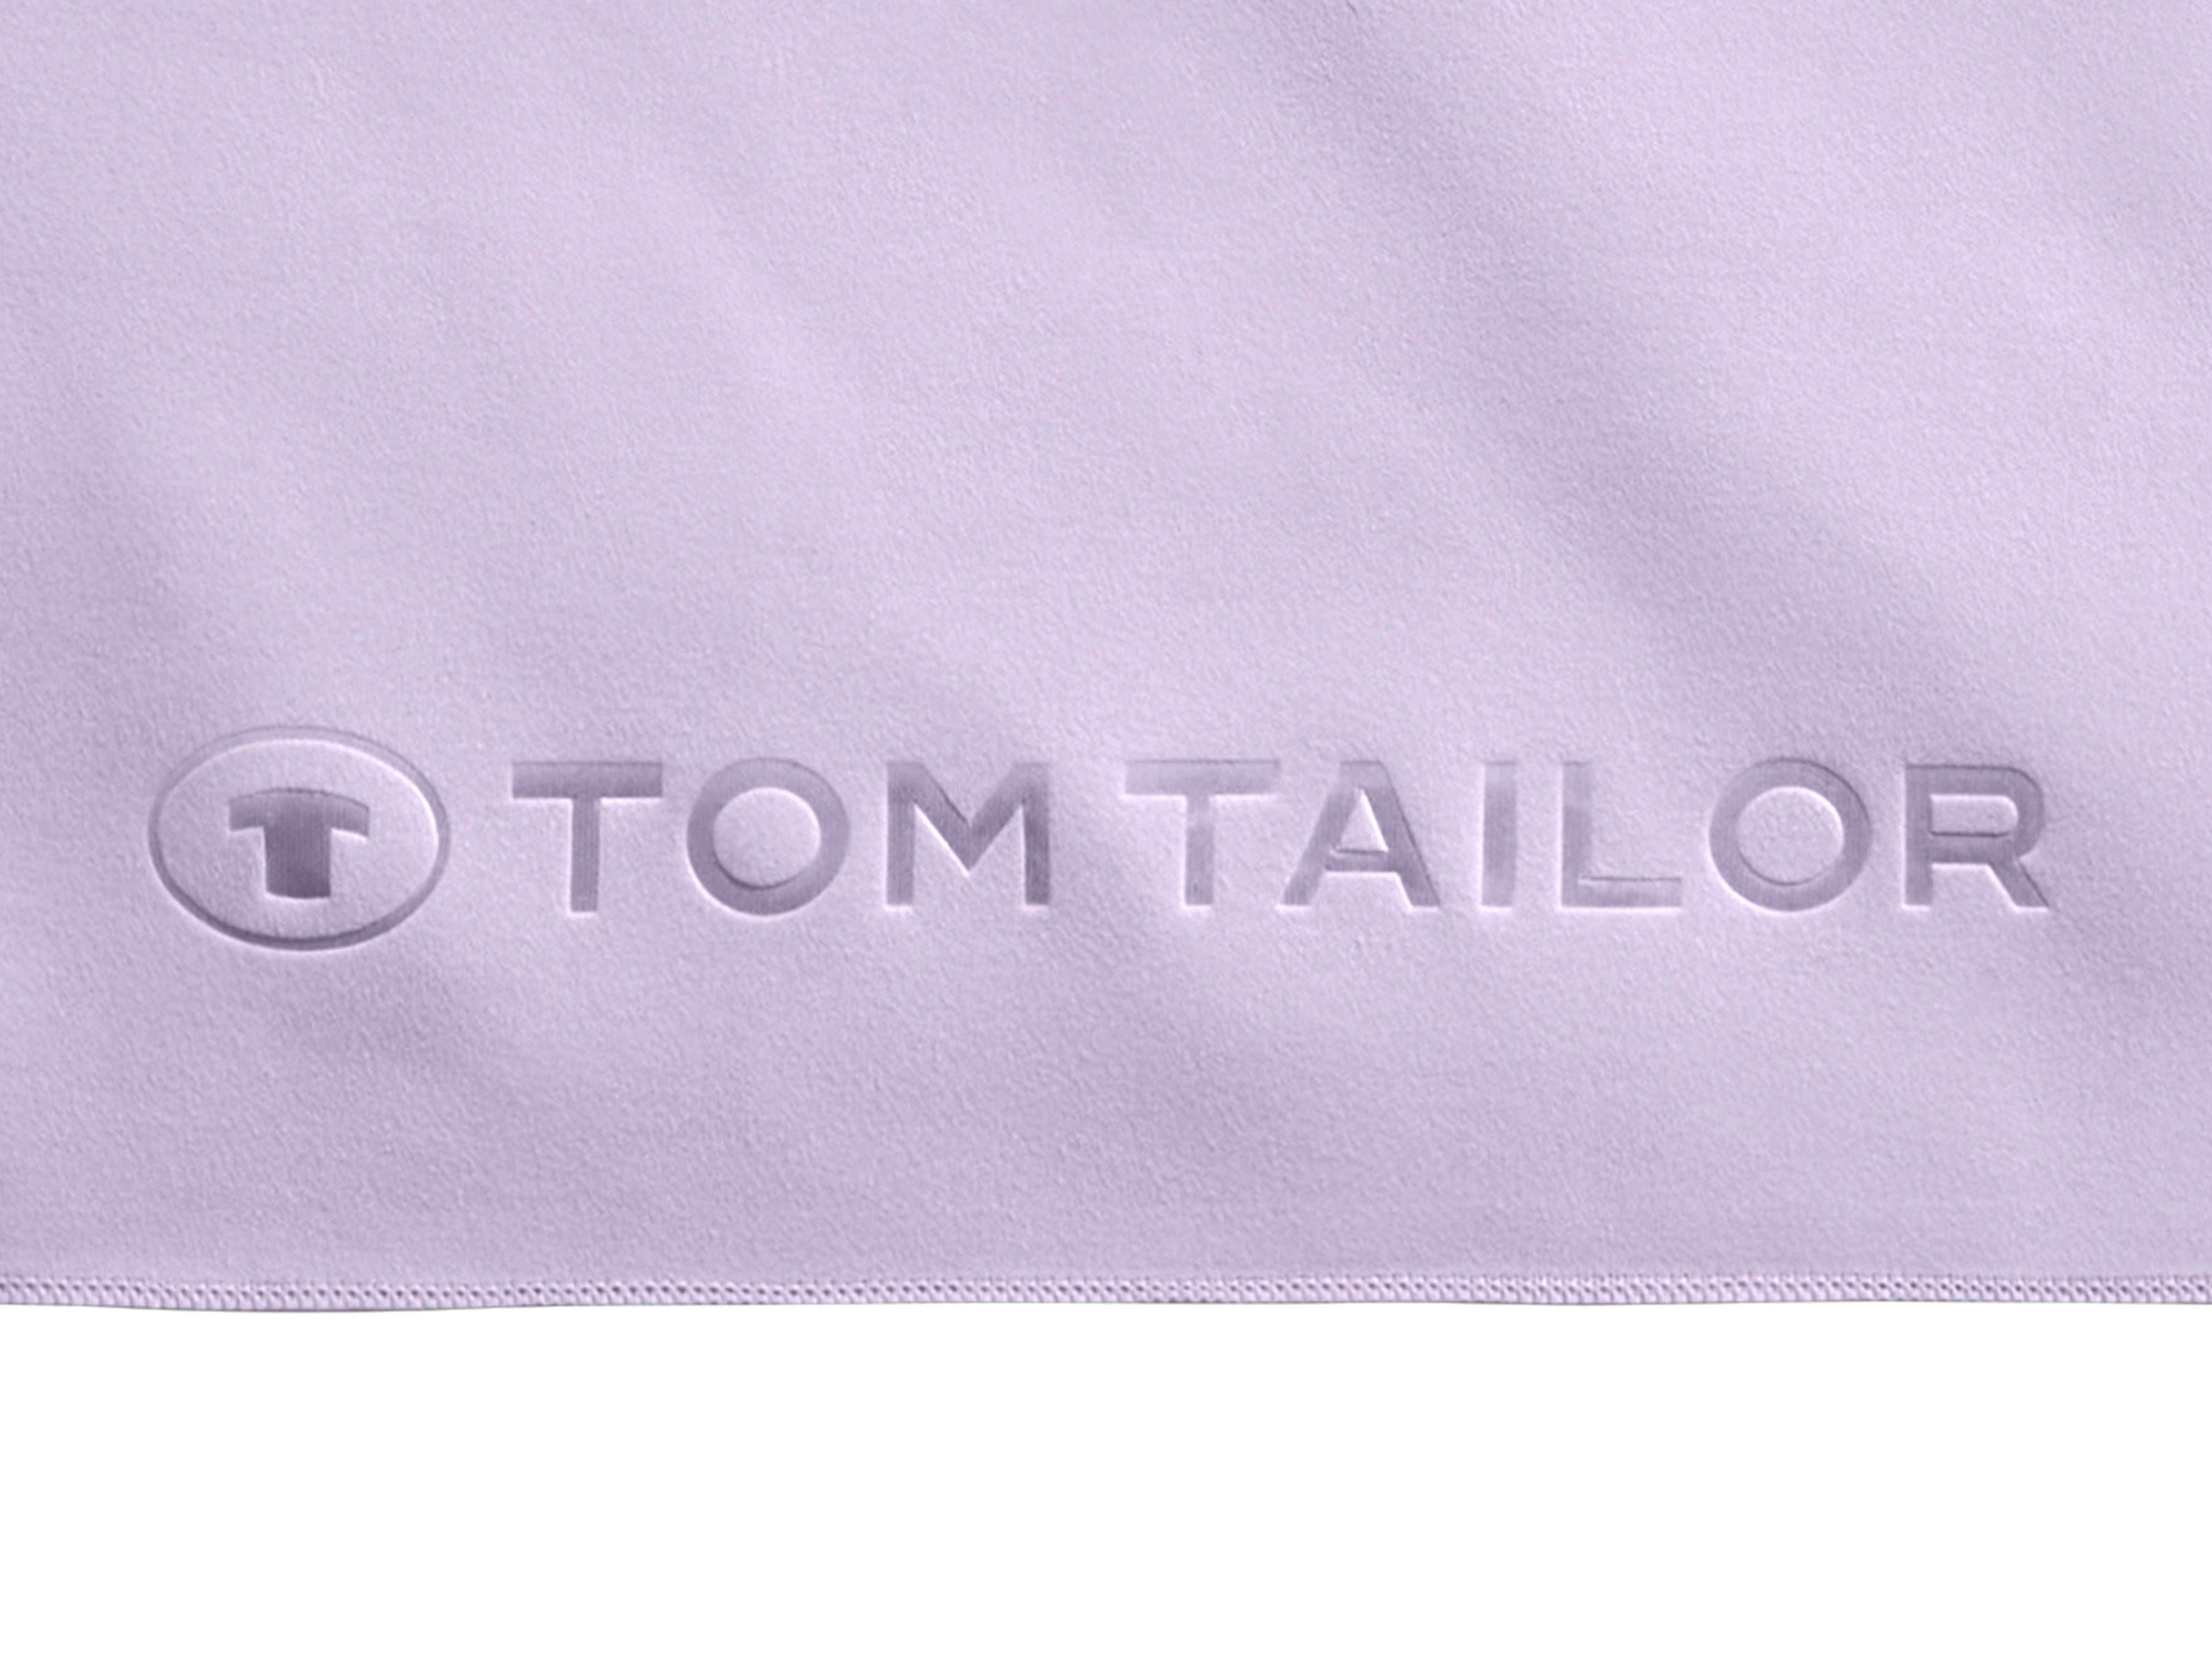 TOM TAILOR HOME Ware (1-St), mit weiche trocknend, dünne, schnell uni, Duschtuch Qualität, feinfädige, Fitness, gewebte Logo lila